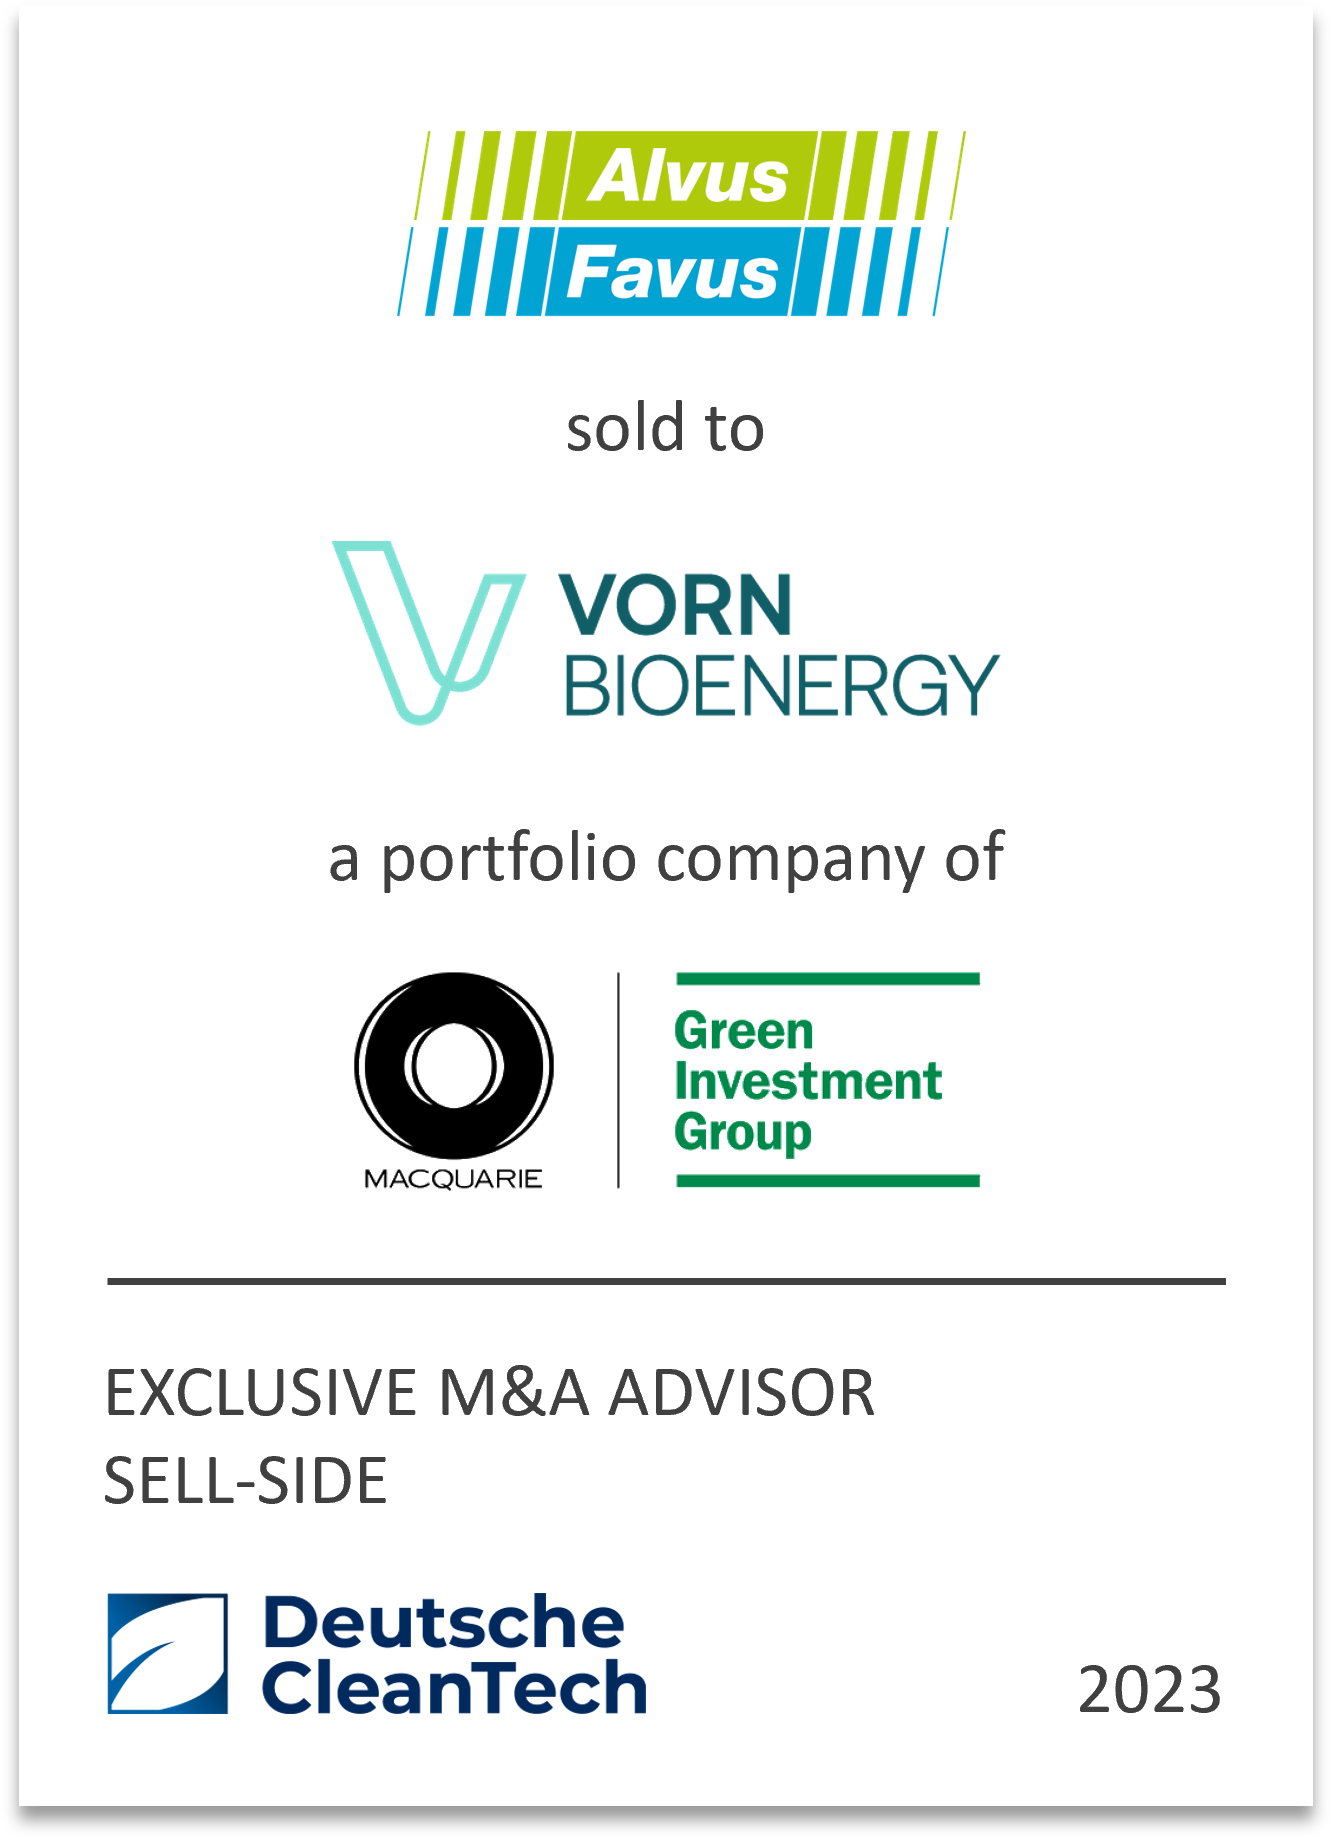 VORN Bioenergy GmbH acquires Alvus S.r.l. and Favus S.r.l.